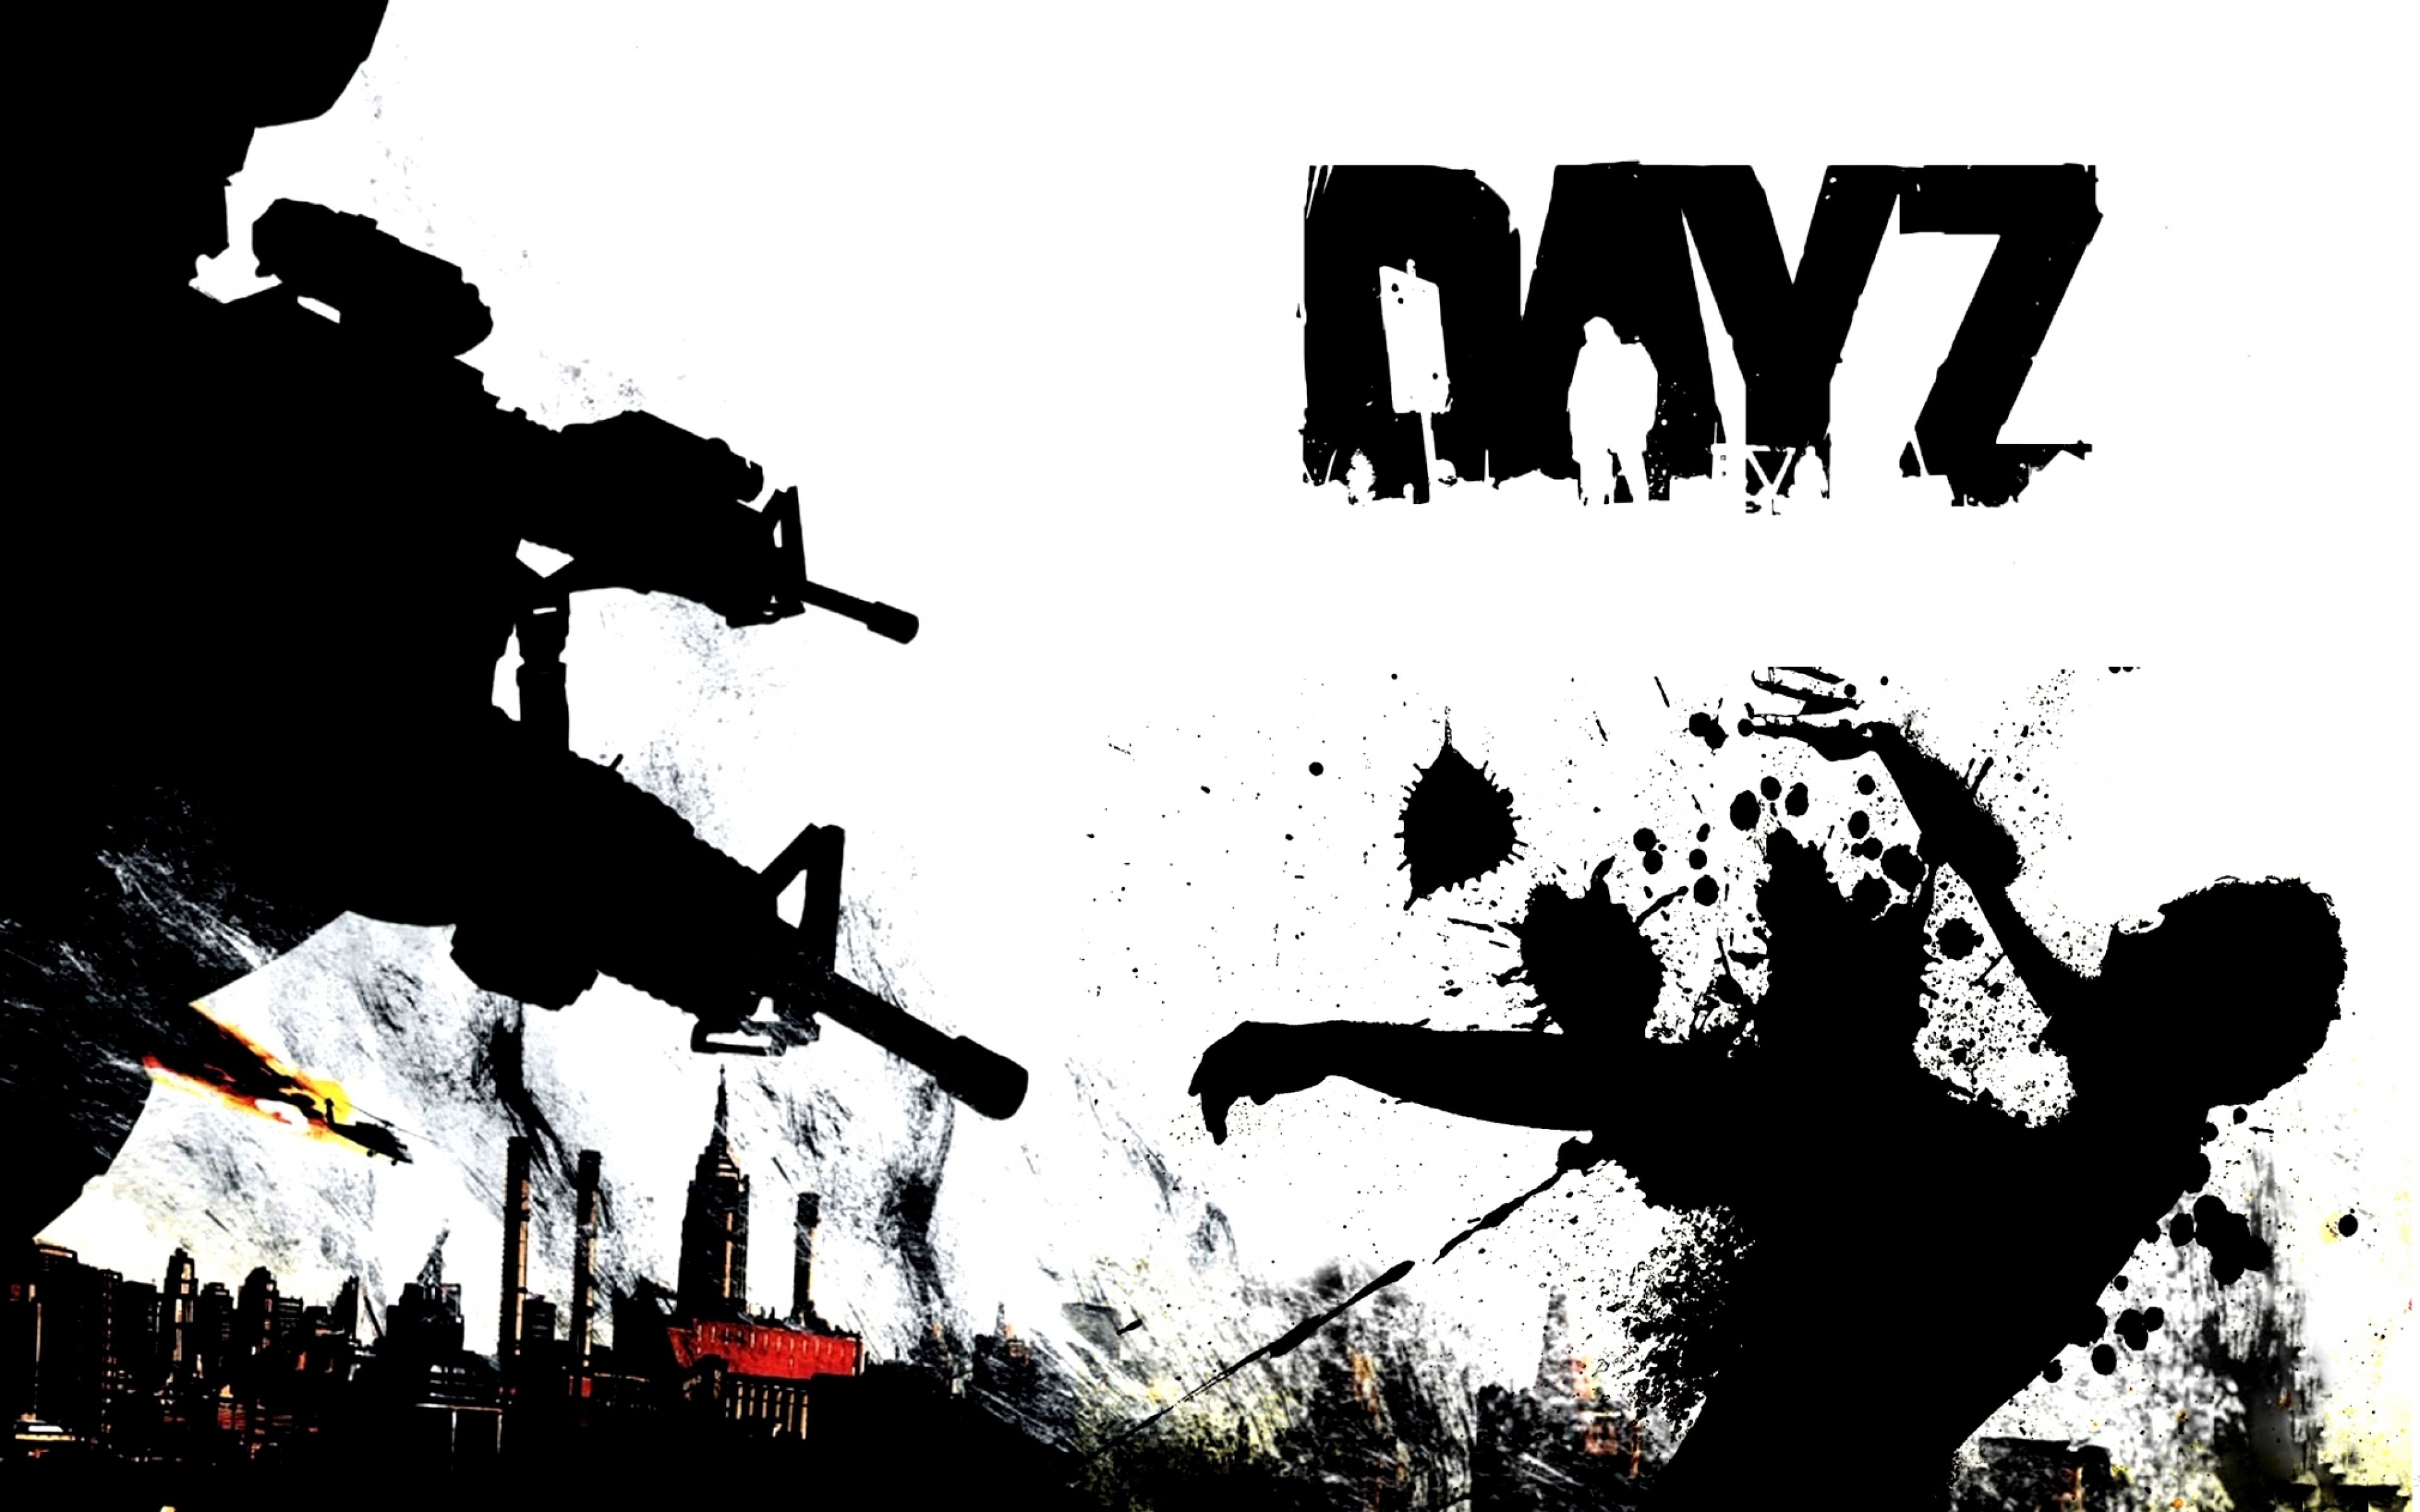 dayz_day_z_zombie_arma_2_weapons